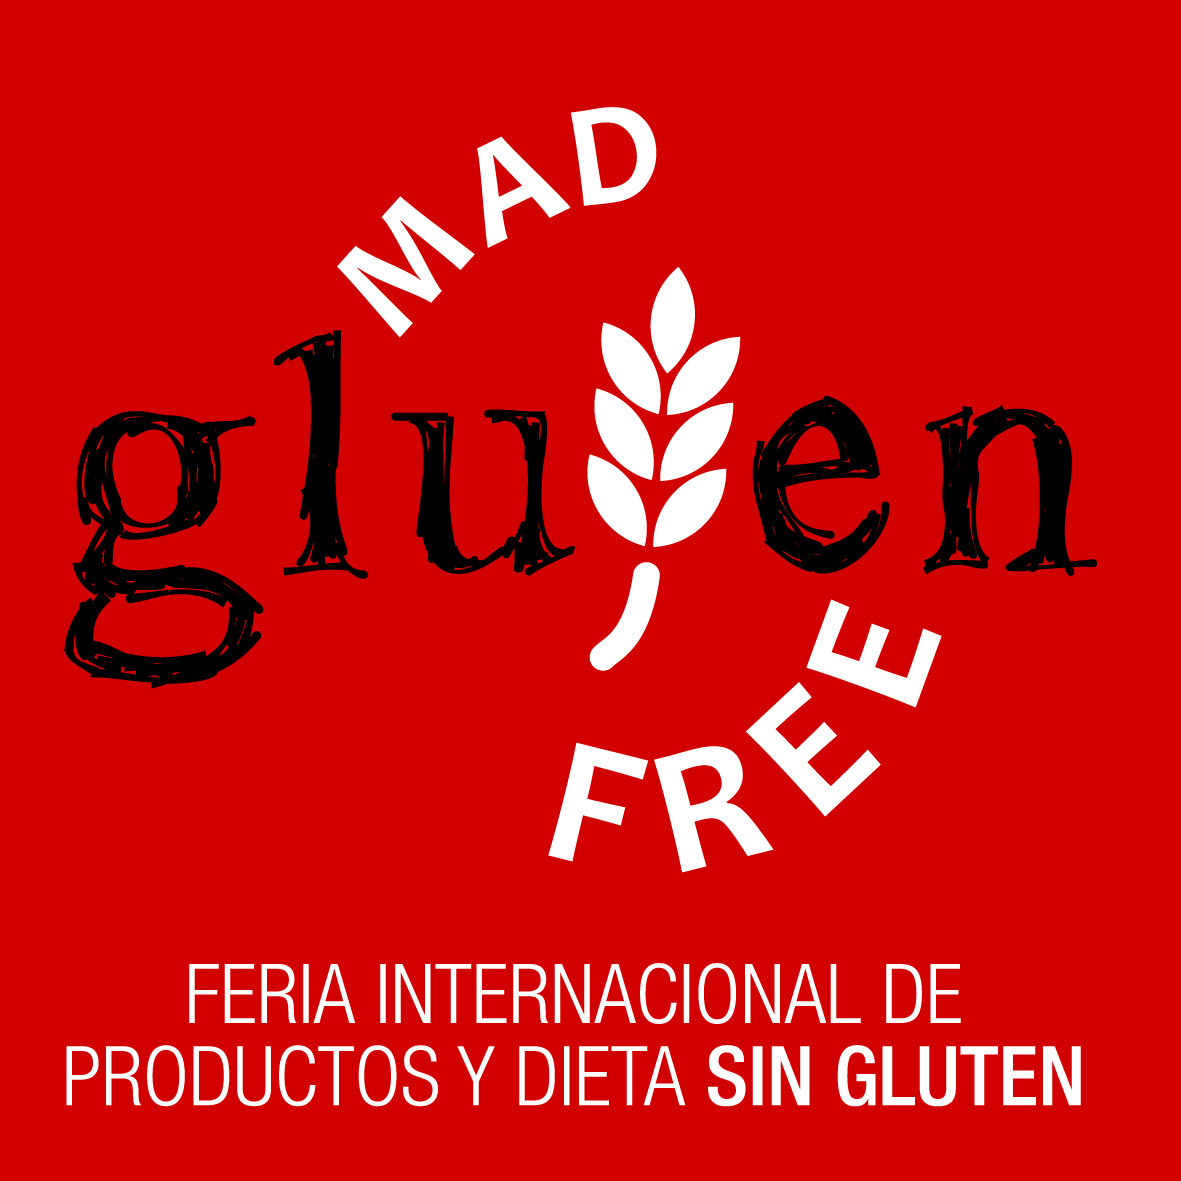 Asiste gratis a MAD Gluten Free 2016 por ser asociado de LA VIÑA - La Viña